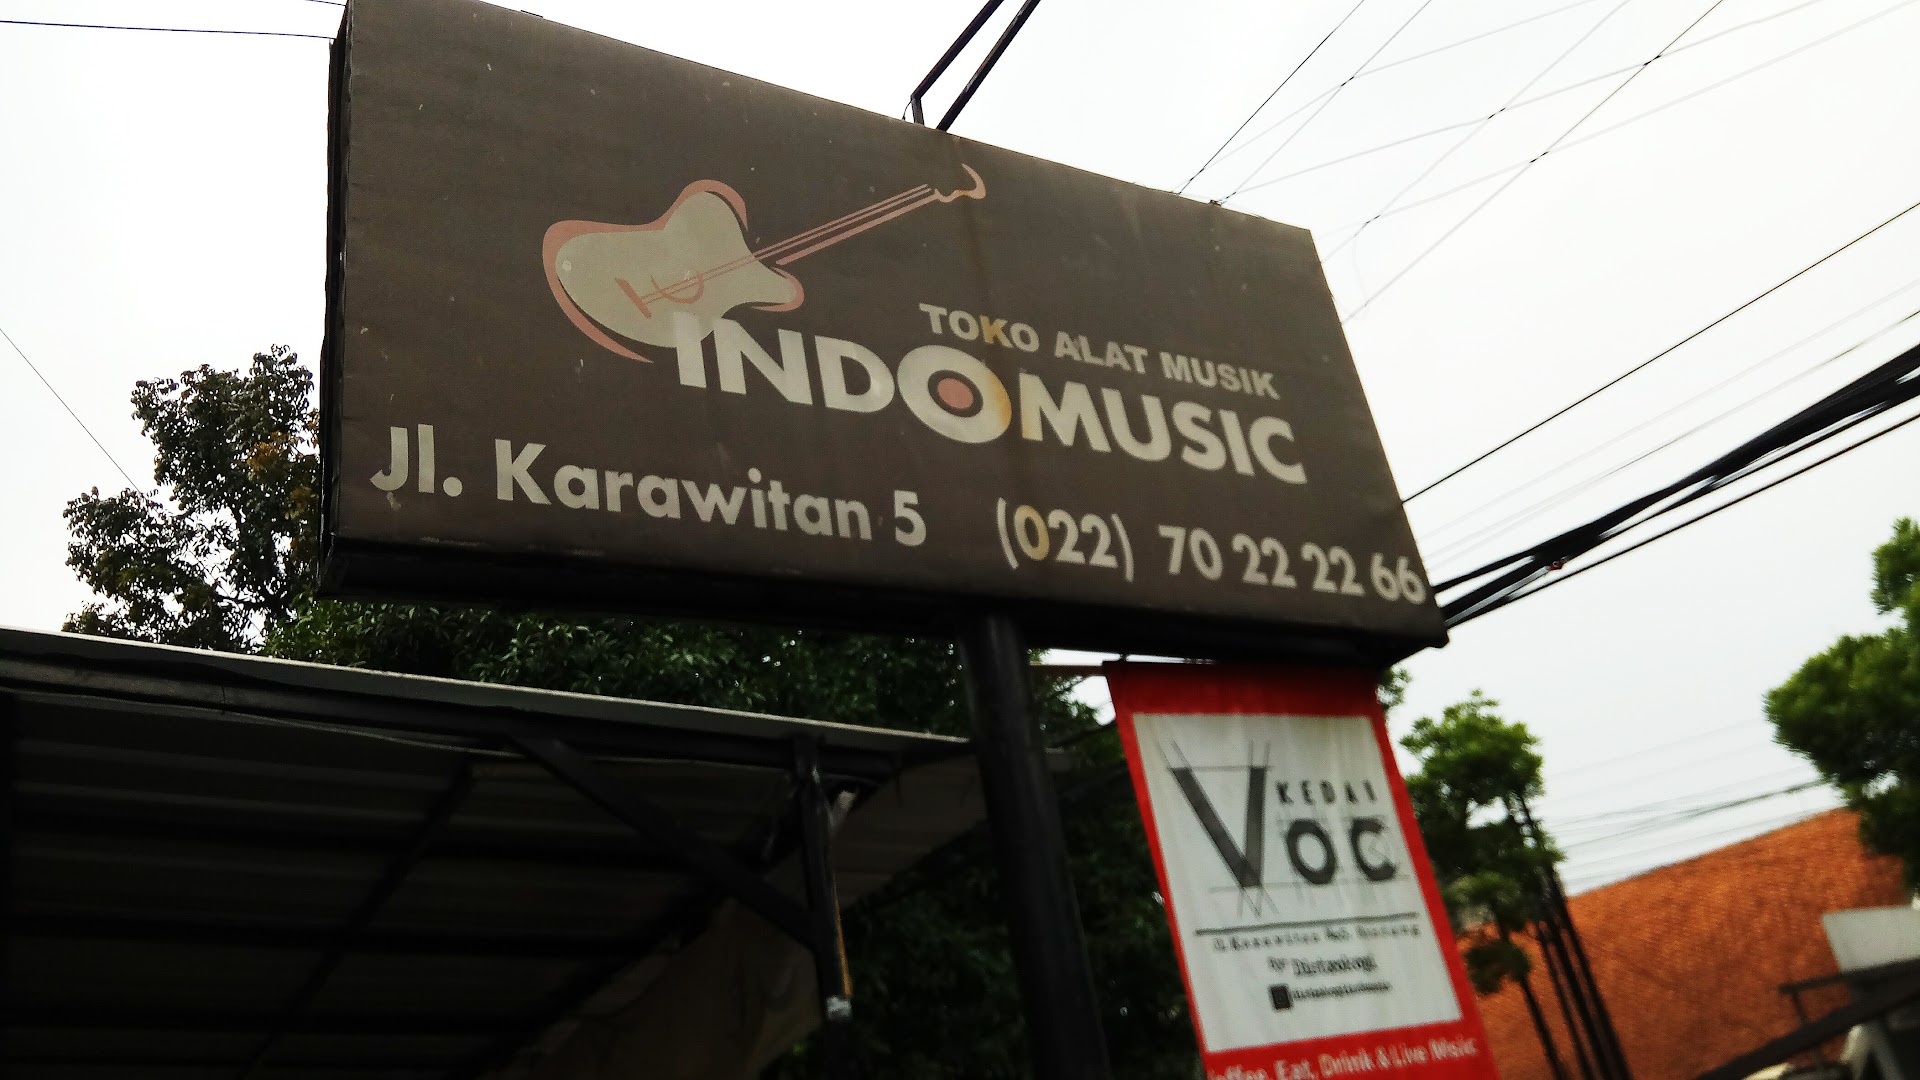 Indomusic - Toko Alat Musik (jual Beli - Tukar Tambah - Tunai Kredit) Photo